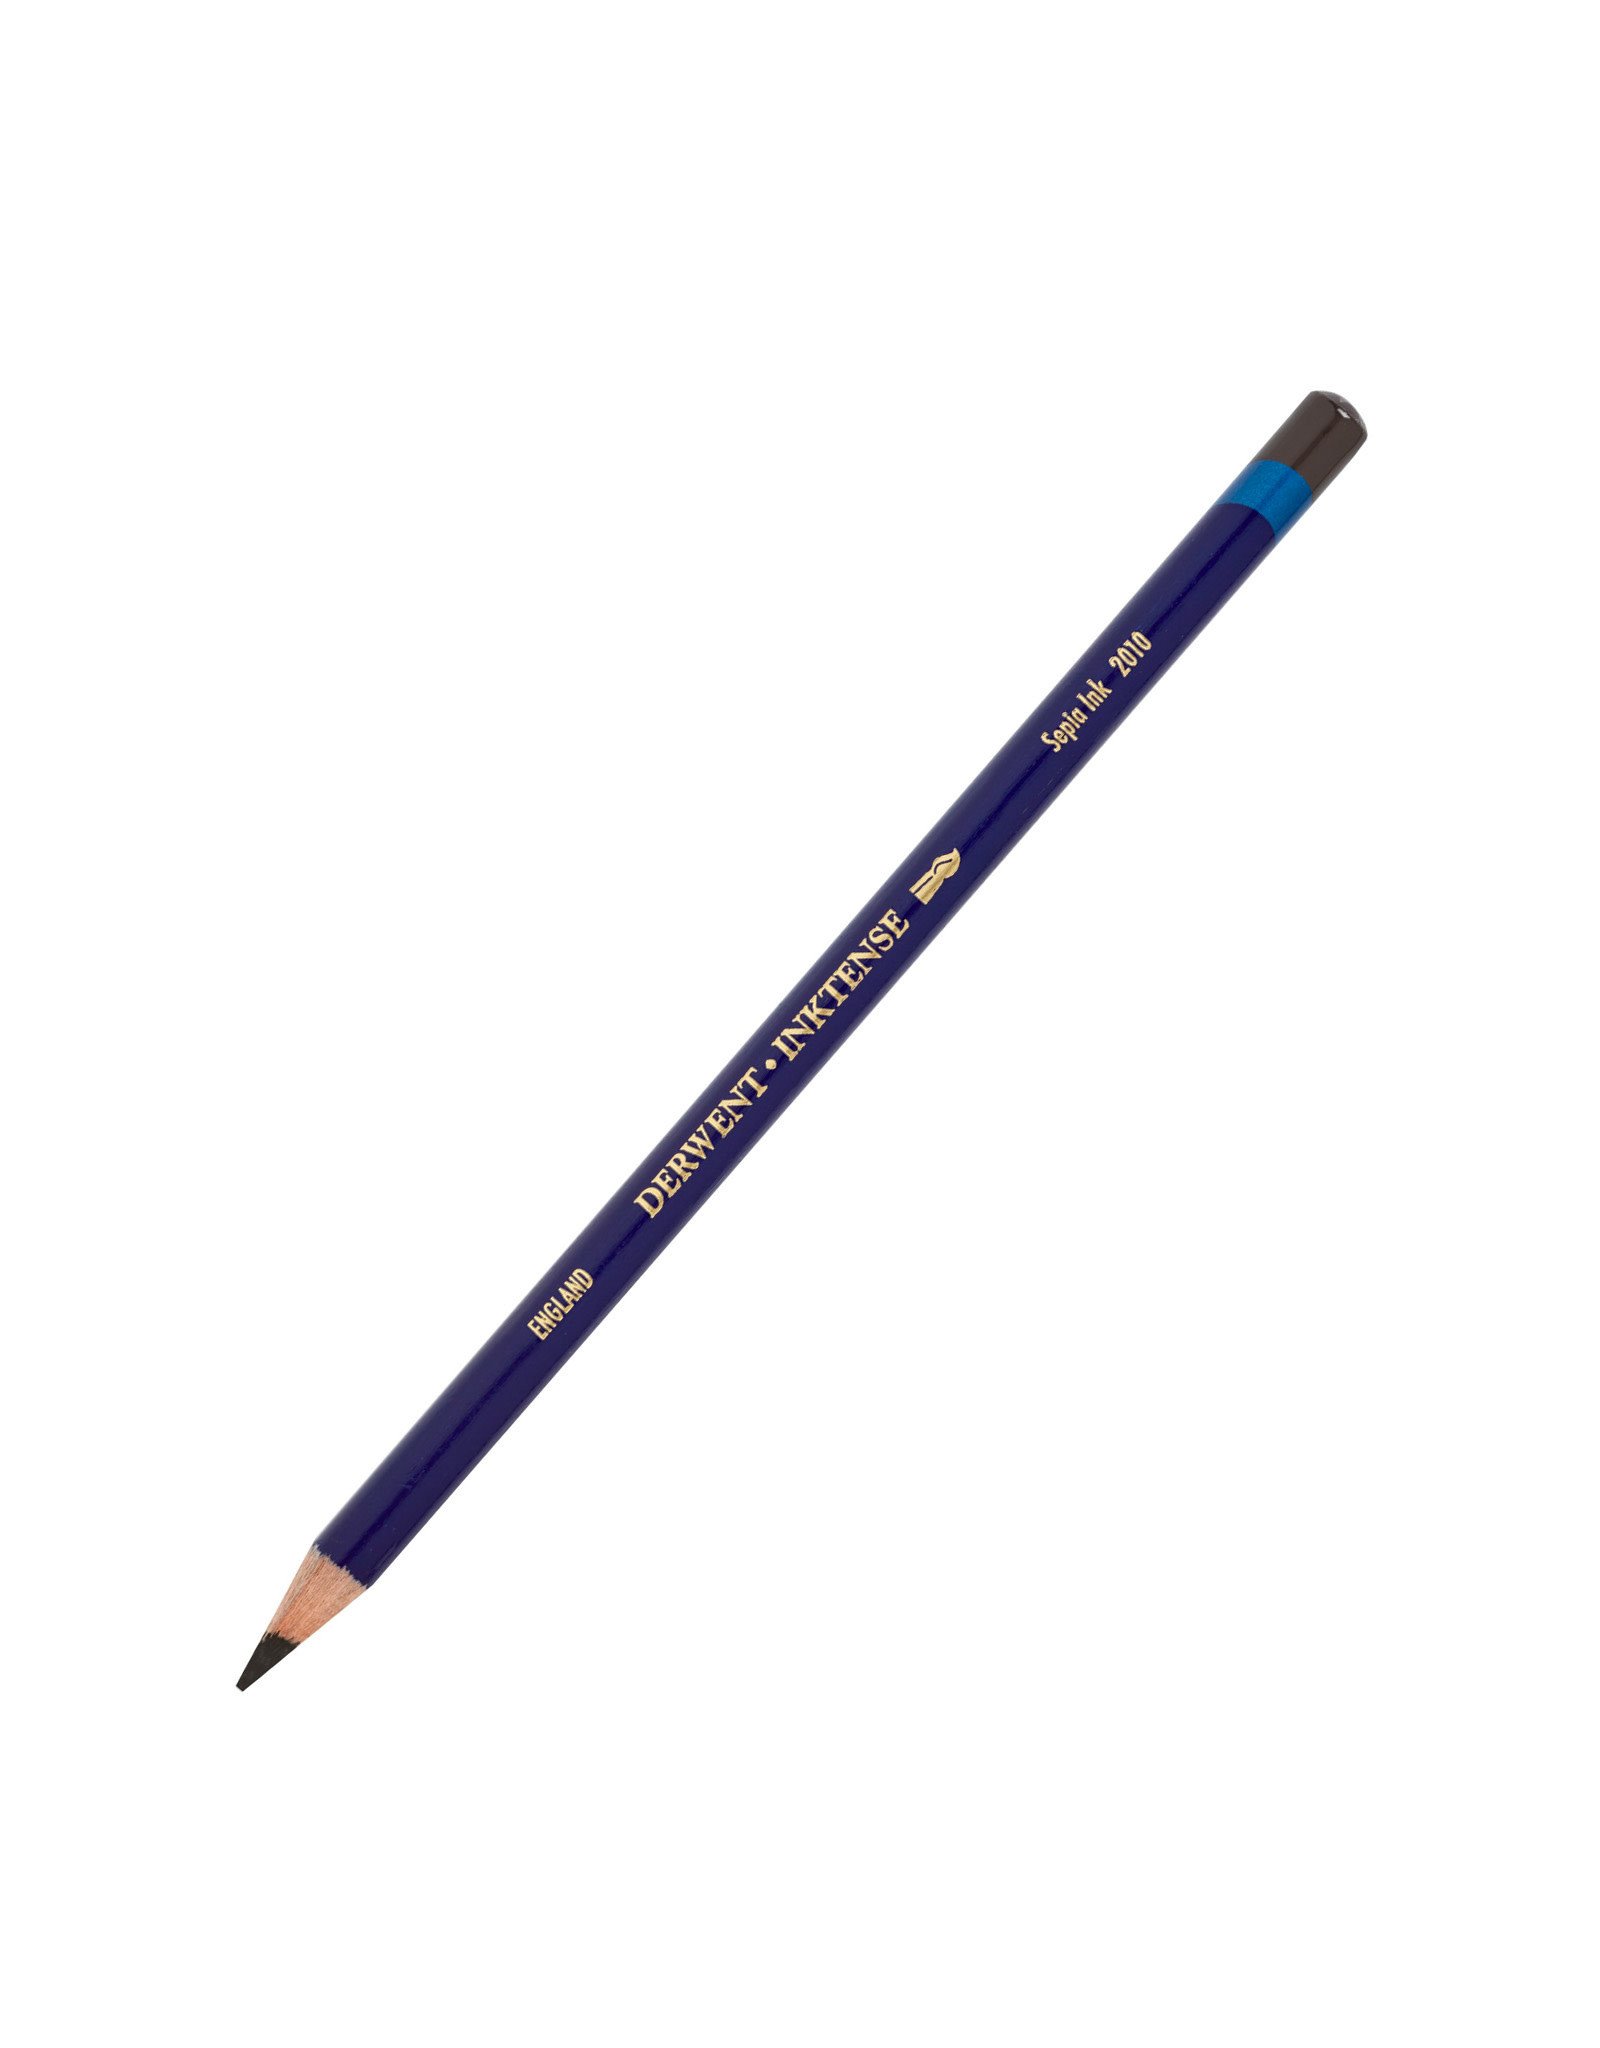 Derwent Derwent Inktense Pencil, Sepia Ink